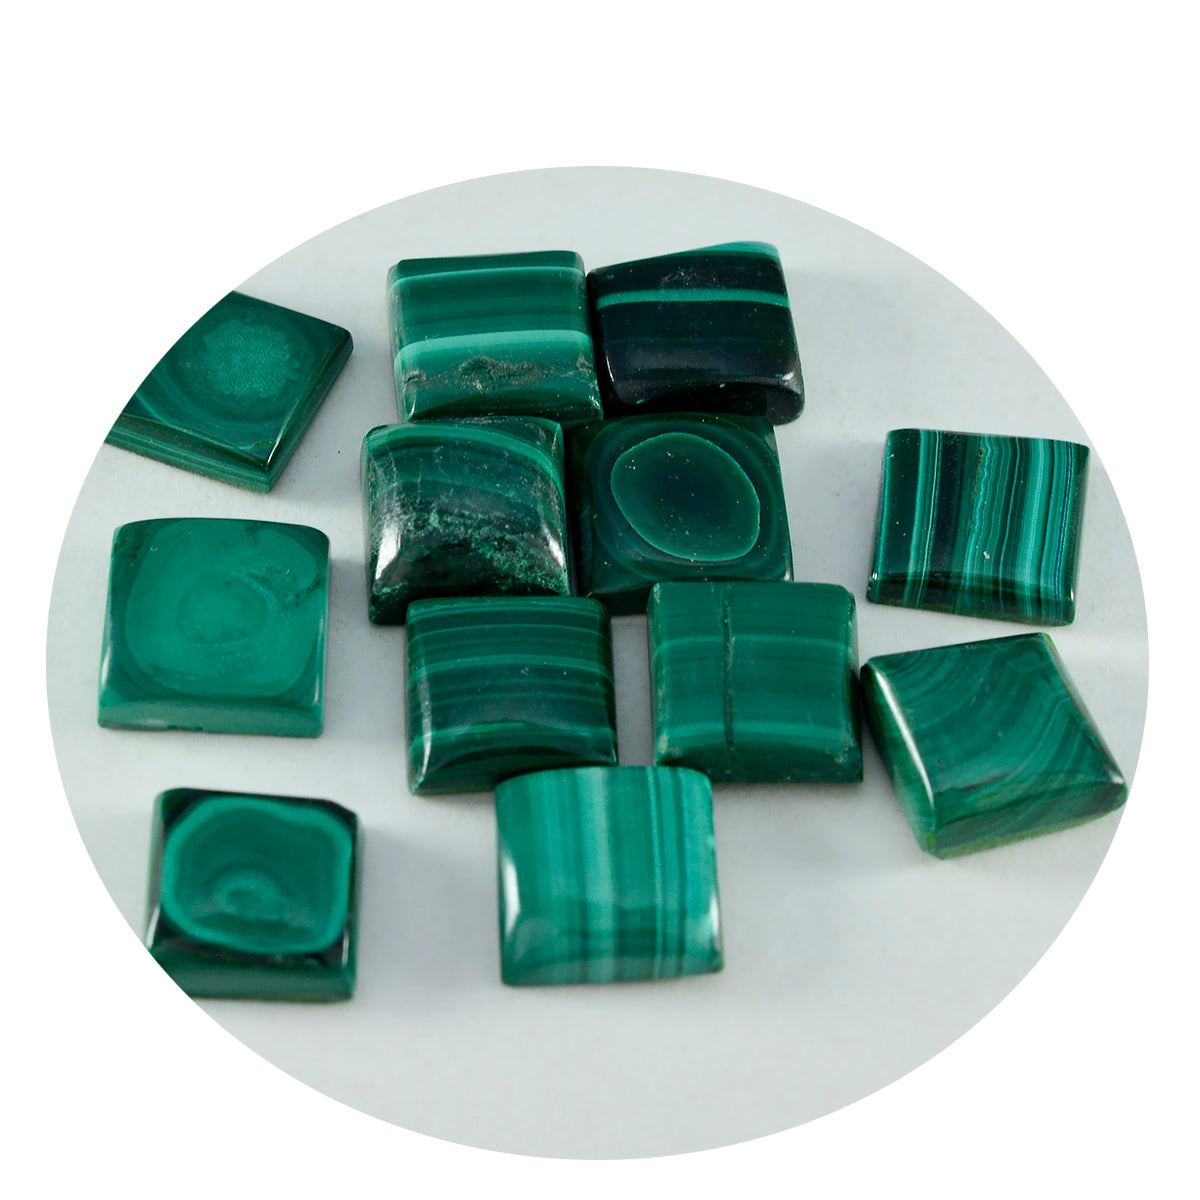 Riyogems 1PC groene malachiet cabochon 8x8 mm vierkante vorm schattige kwaliteitssteen